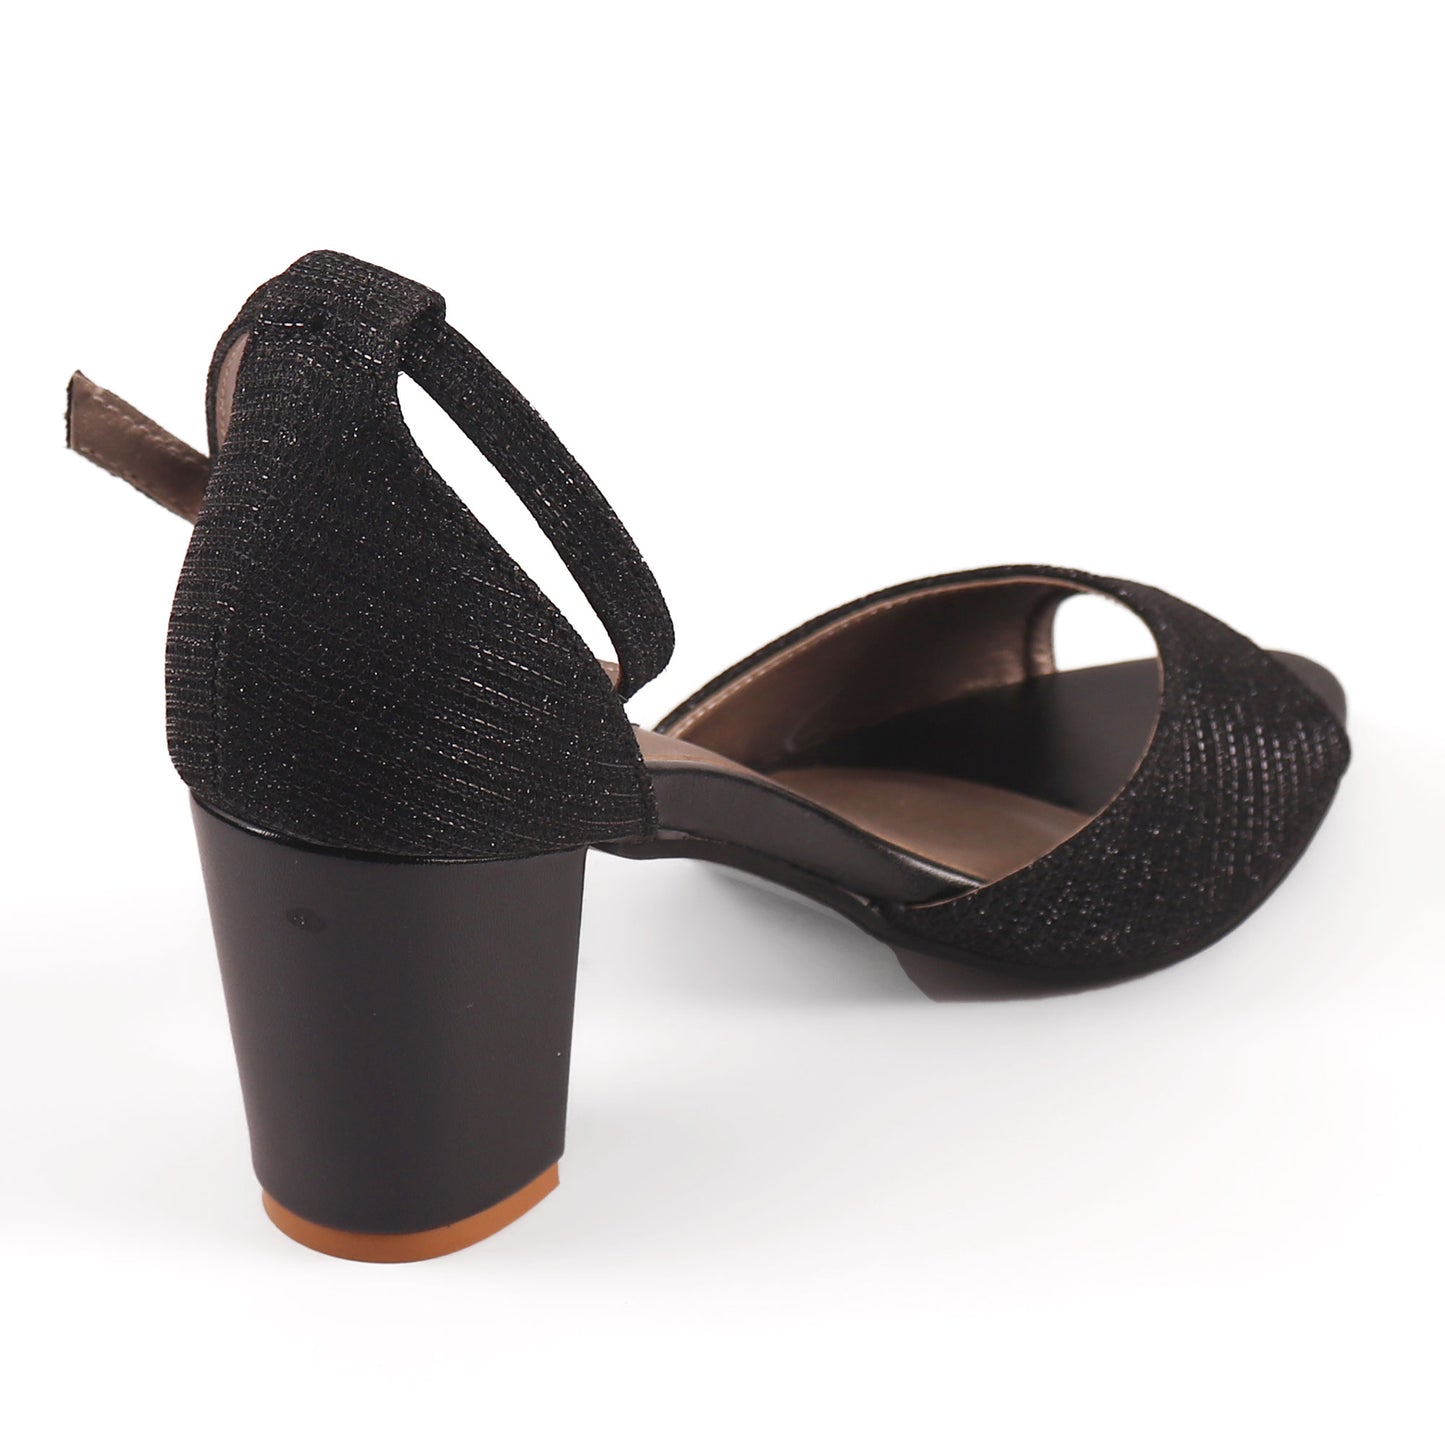 Foot Wear,The Gleamy Block Heel in Black - Cippele Multi Store